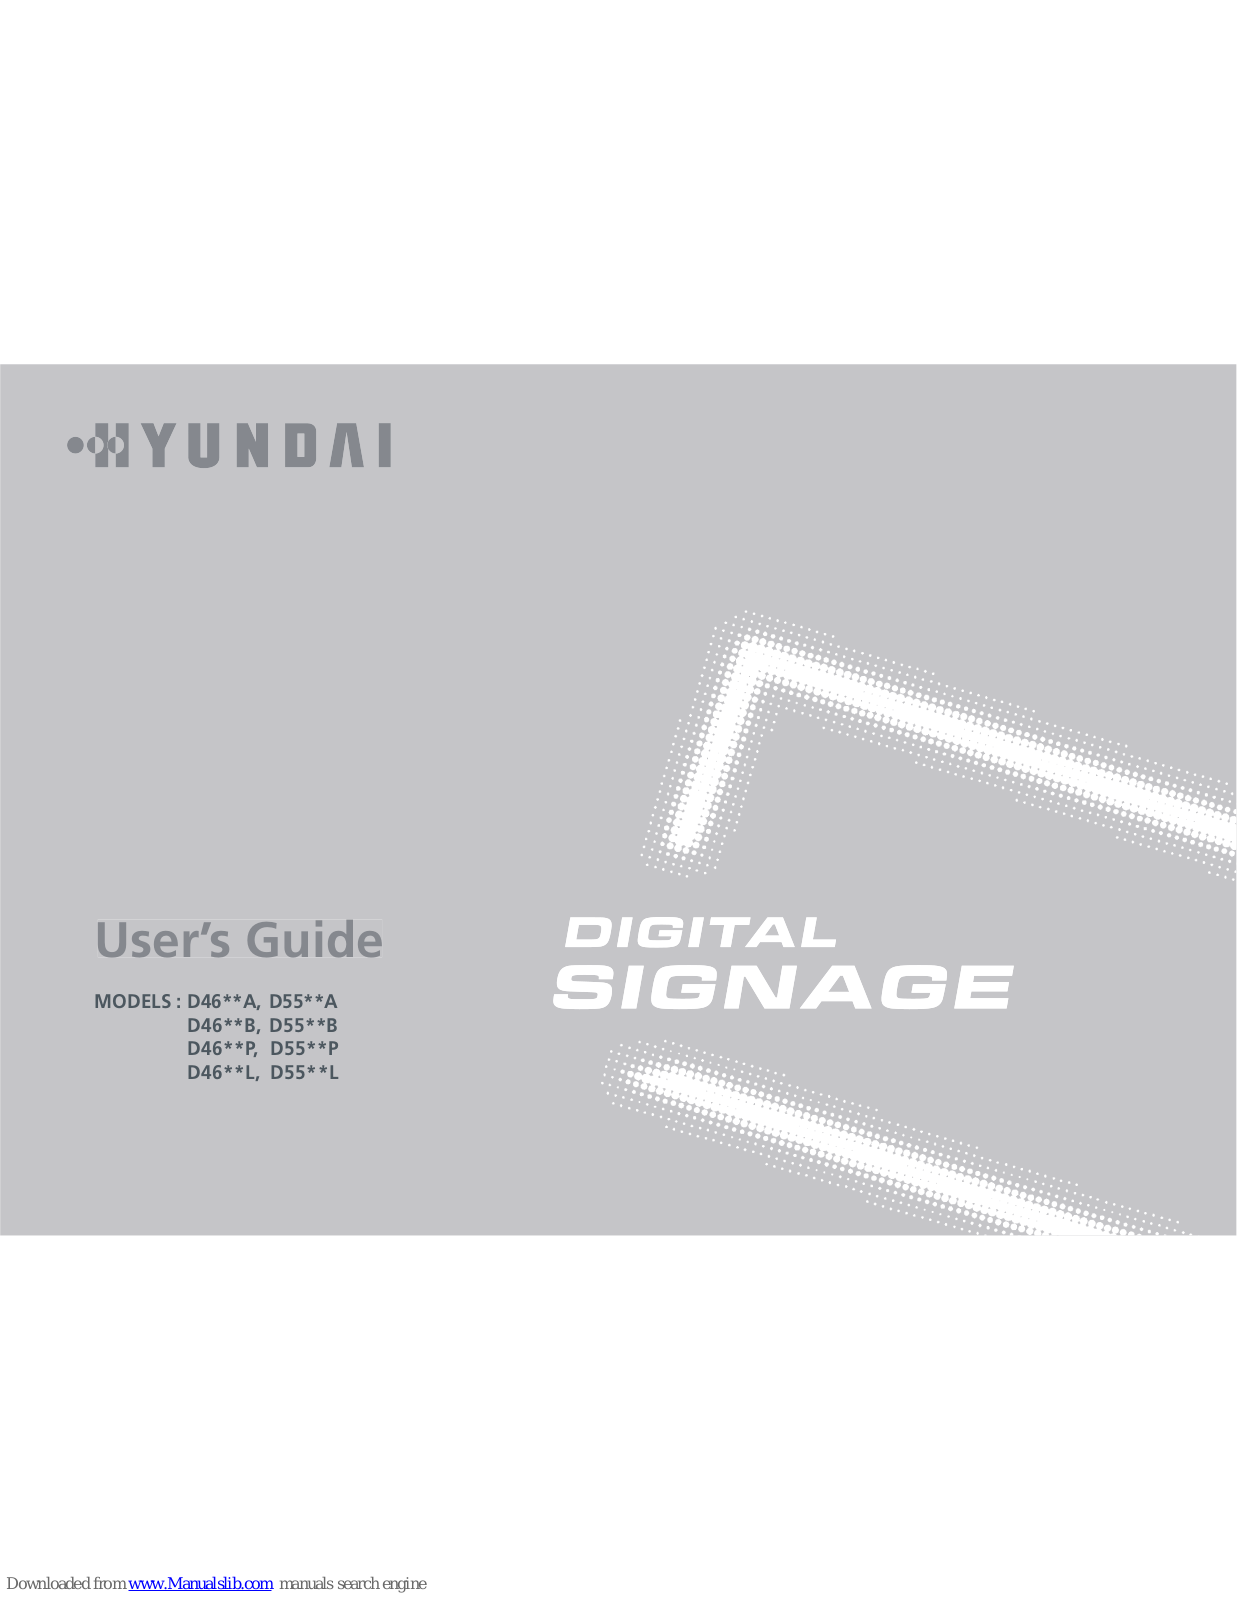 Hyundai D46**A, D46**P, D55**A, D55**P, D46**L User Manual